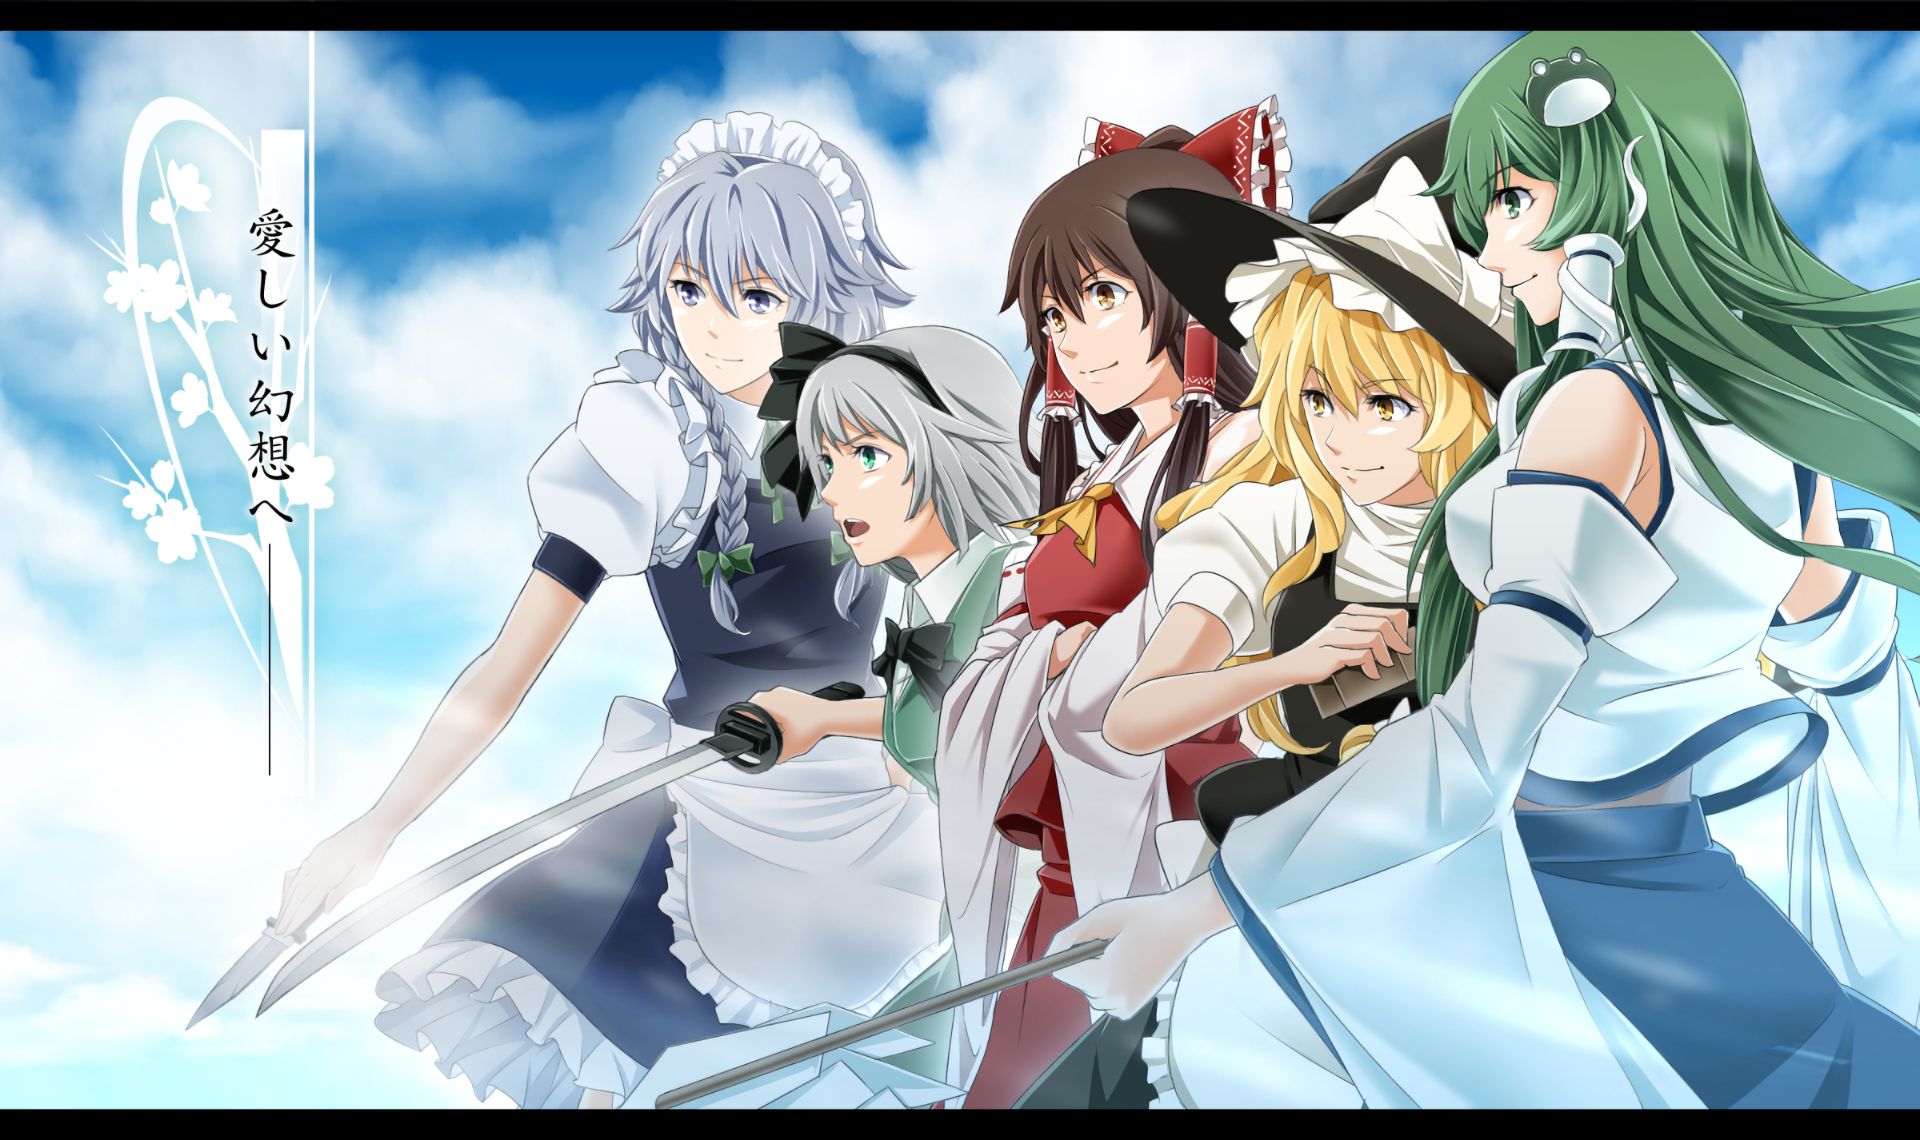 Descarga gratuita de fondo de pantalla para móvil de Animado, Touhou, Youmu Konpaku, Sanae Kochiya, Reimu Hakurei, Sakuya Izayoi, Marisa Kirisame.